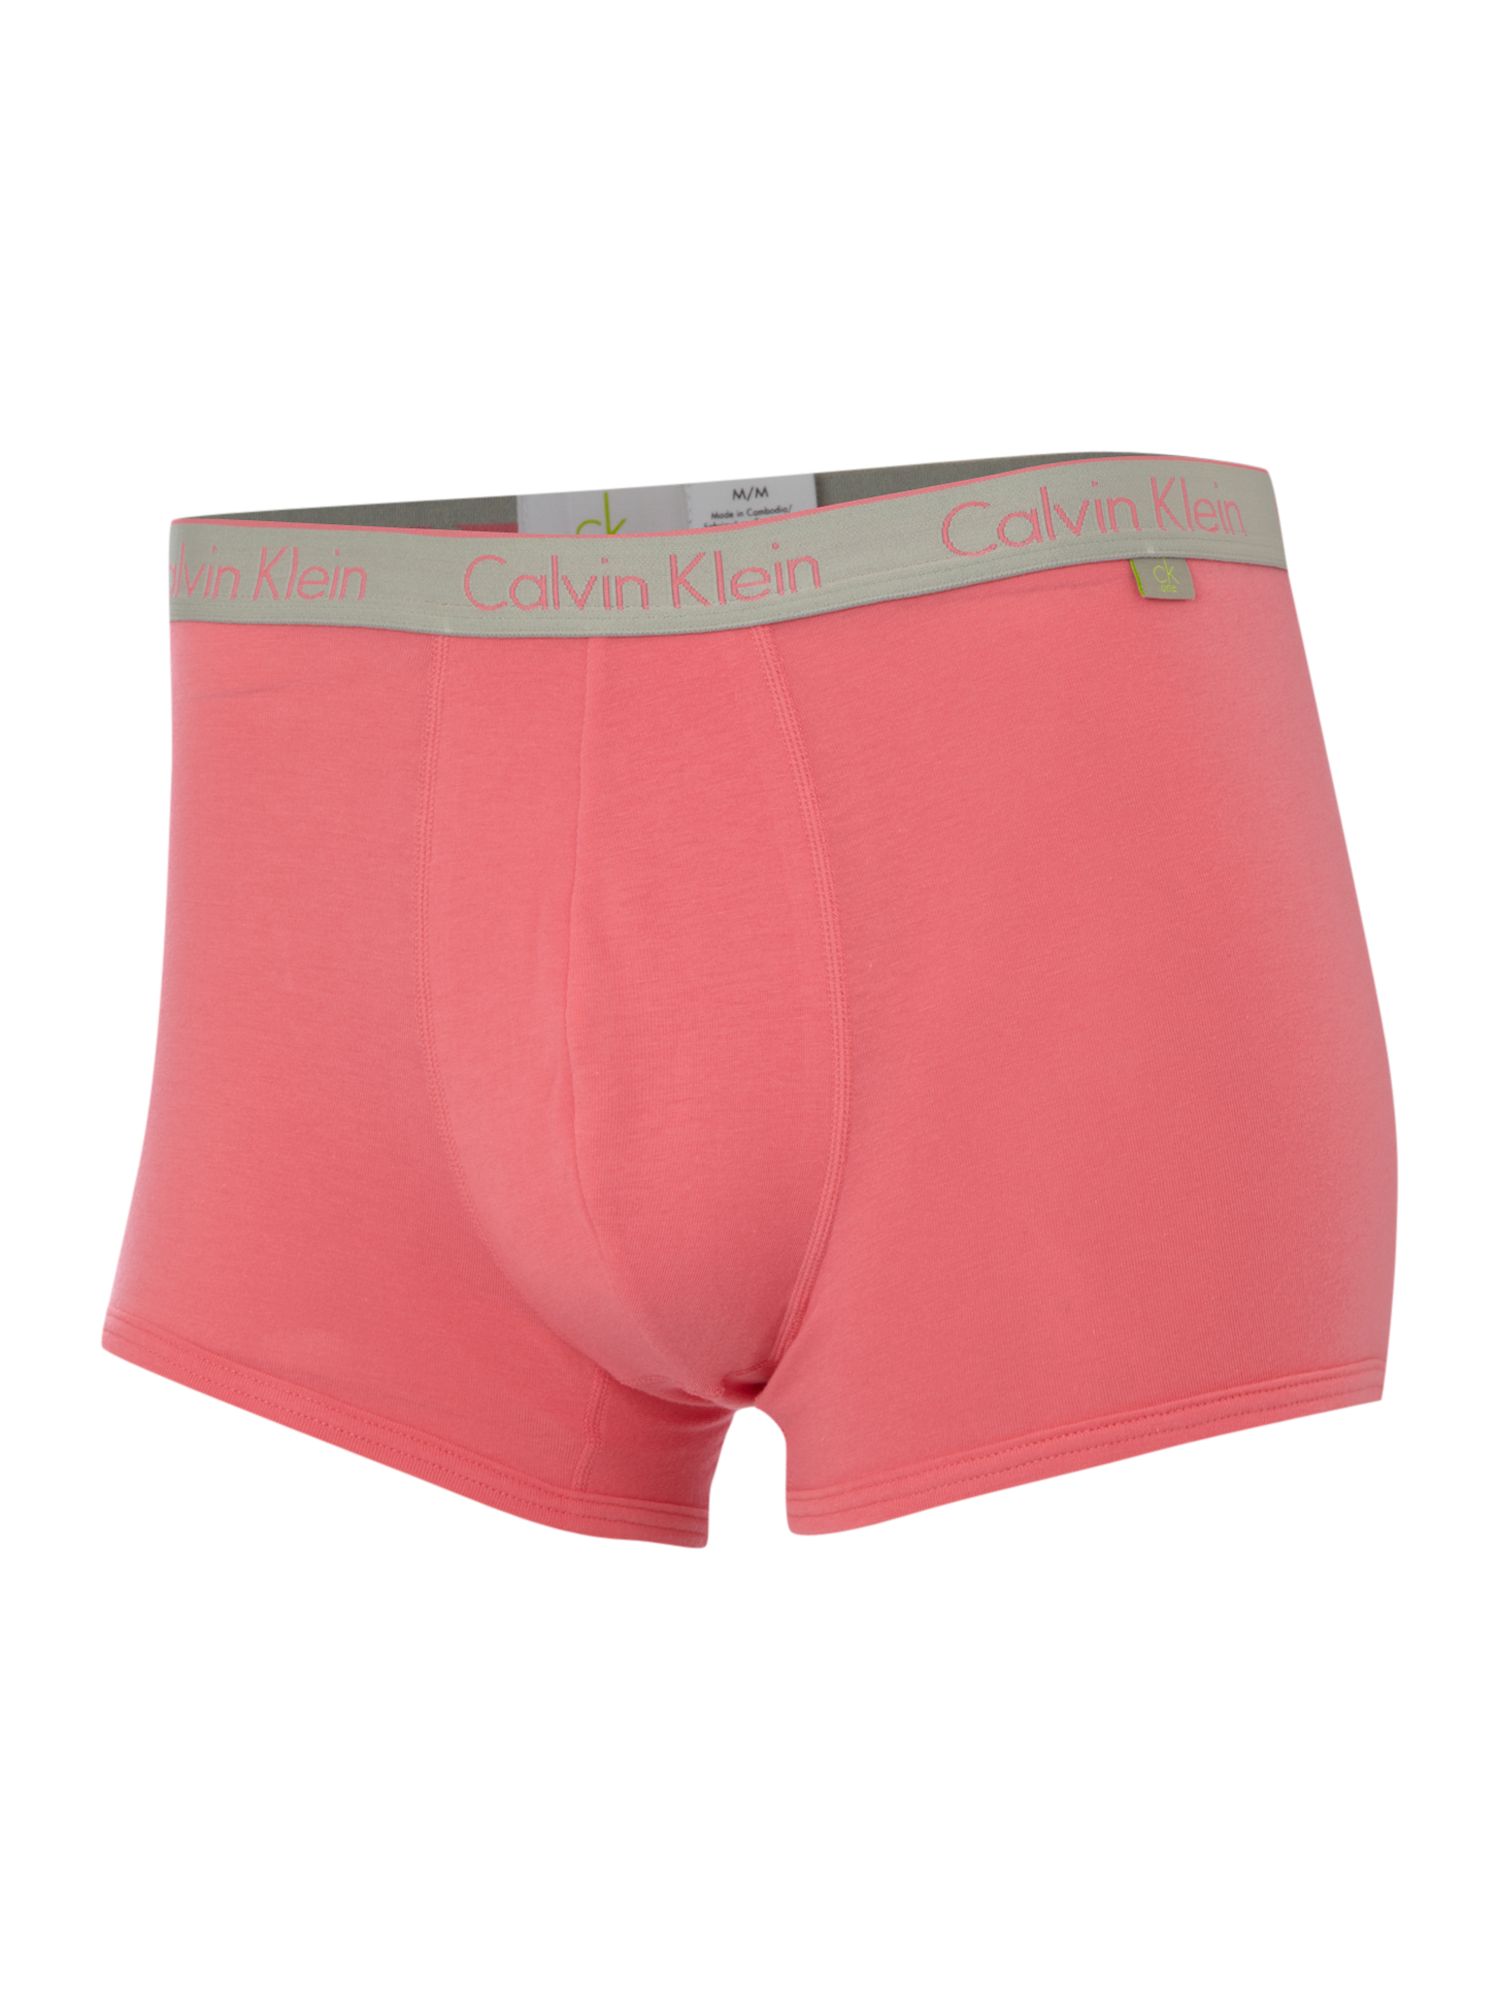 Calvin klein Cotton Underwear Trunk in Pink for Men | Lyst